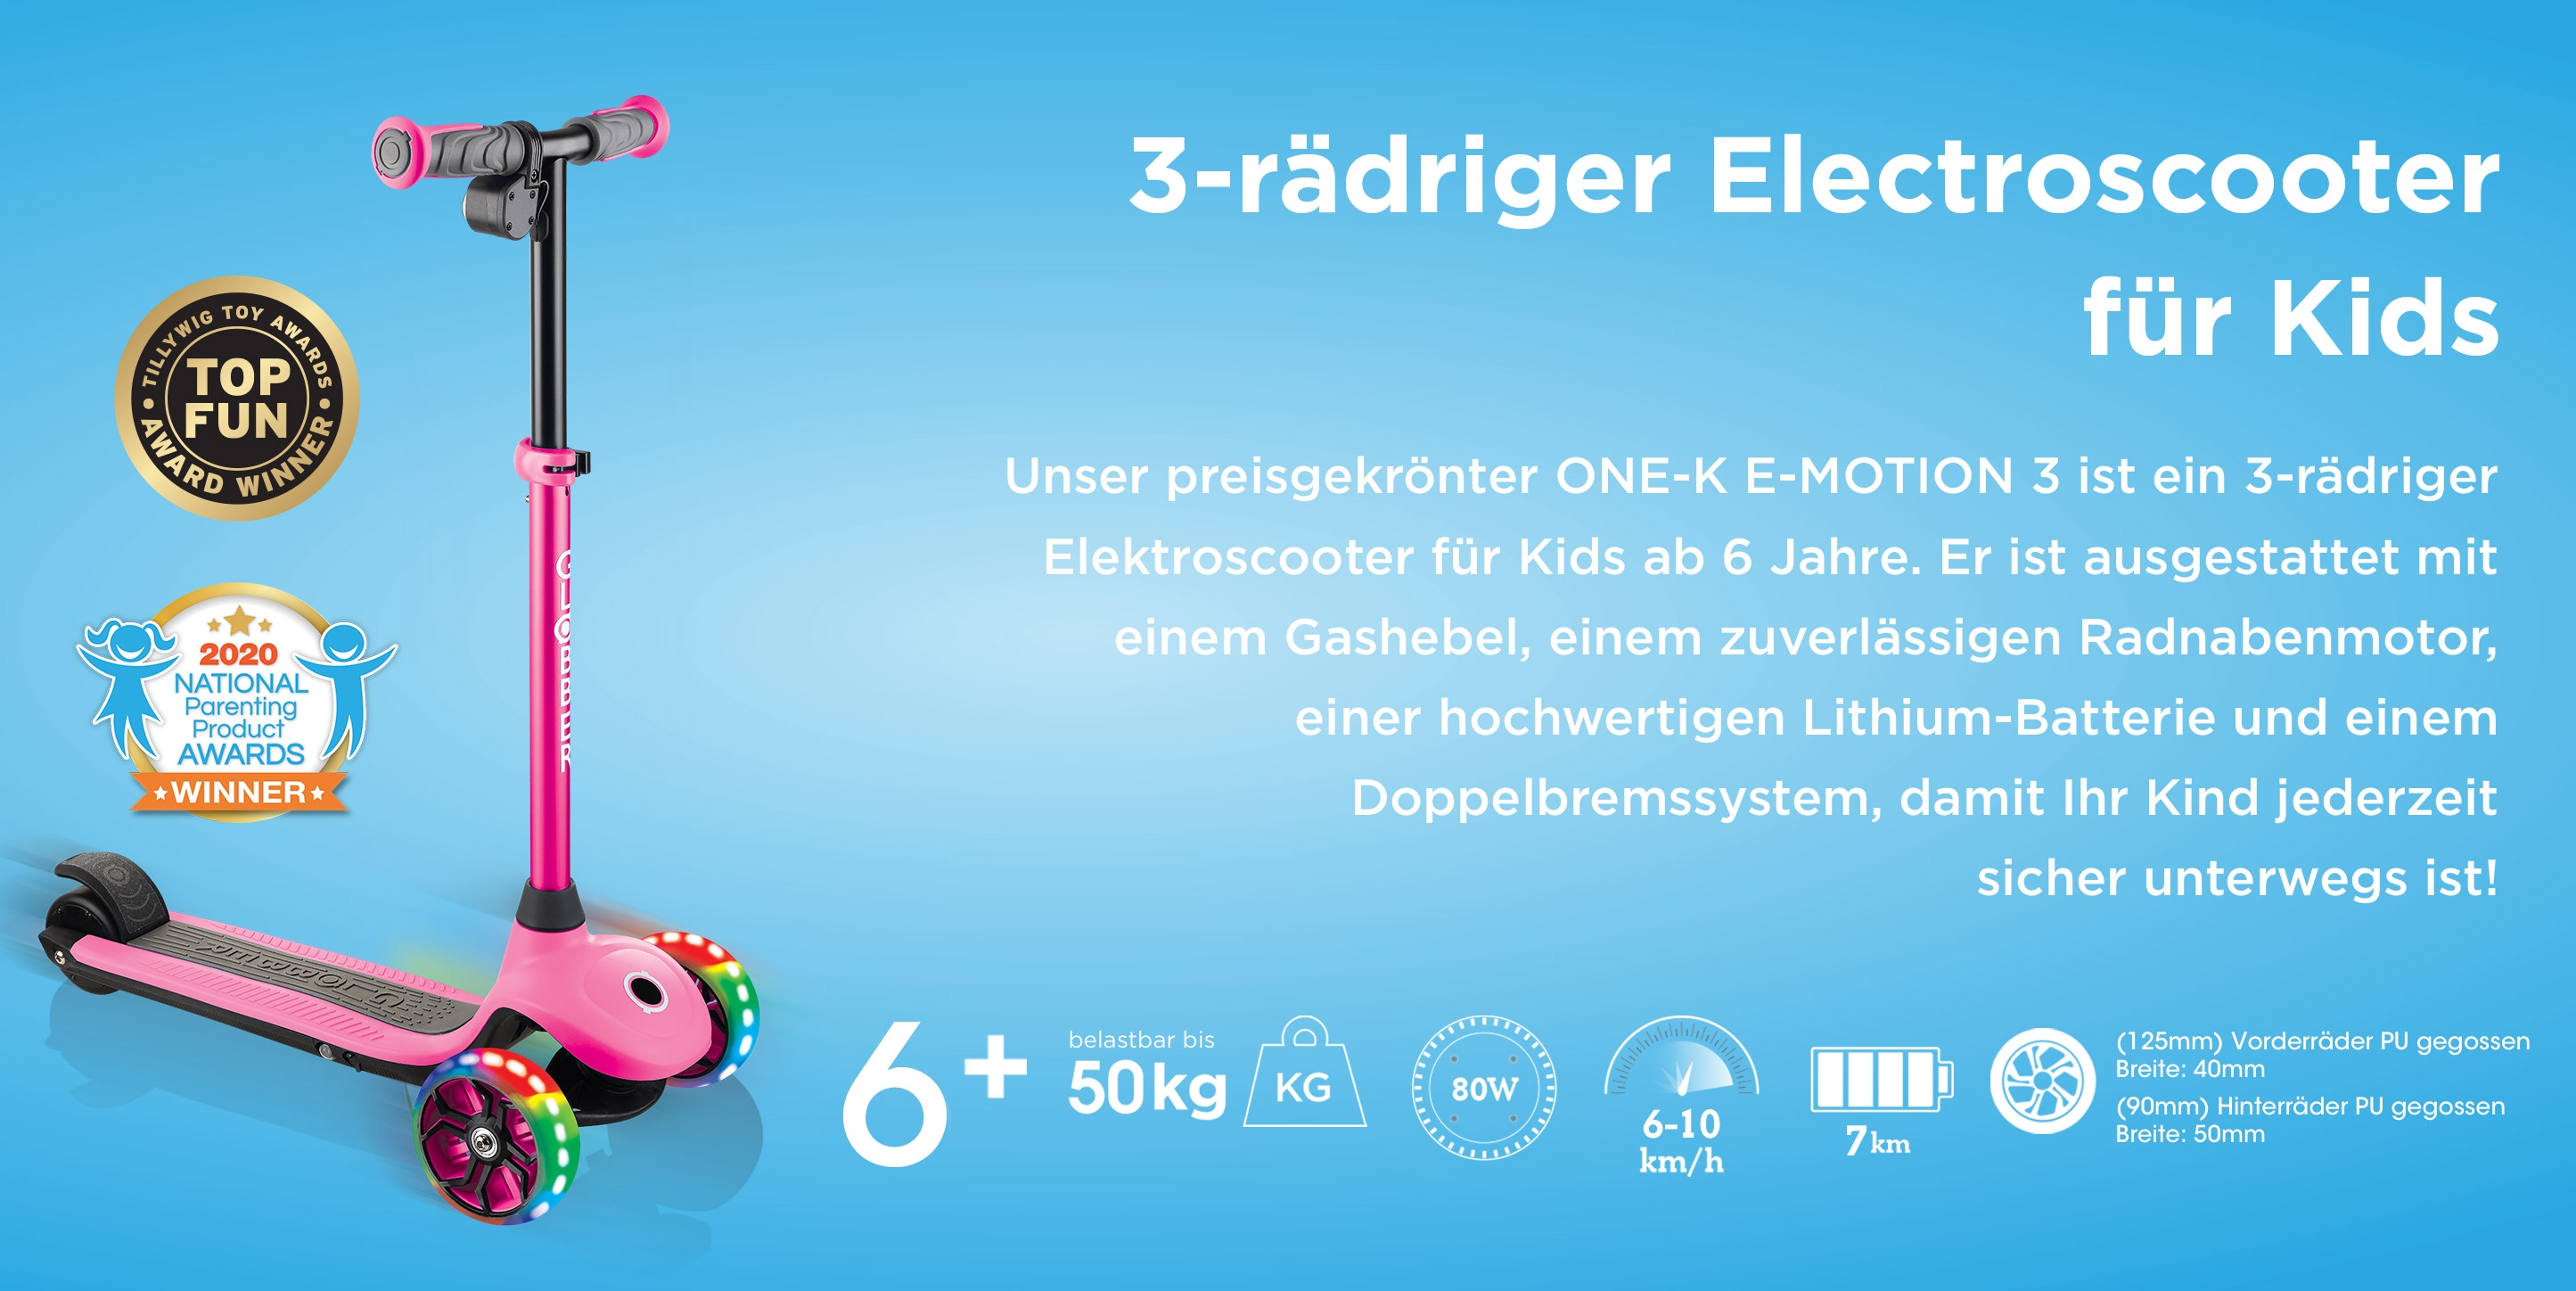 3-rädriger Electroscooter für Kids